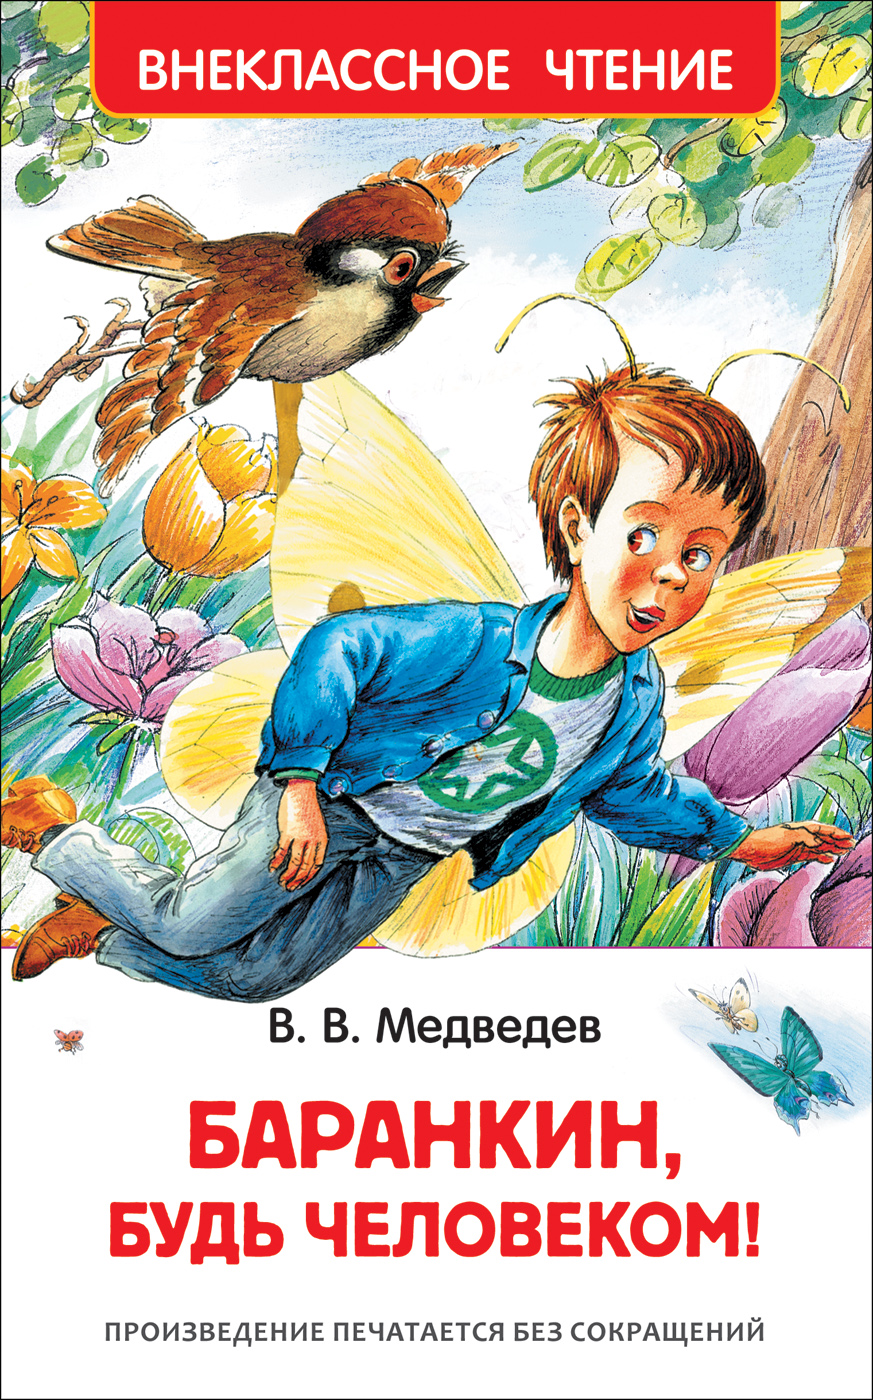 Книга 29897 "Баранкин, будь человекмо" ВЧ  Росмэн - Тамбов 